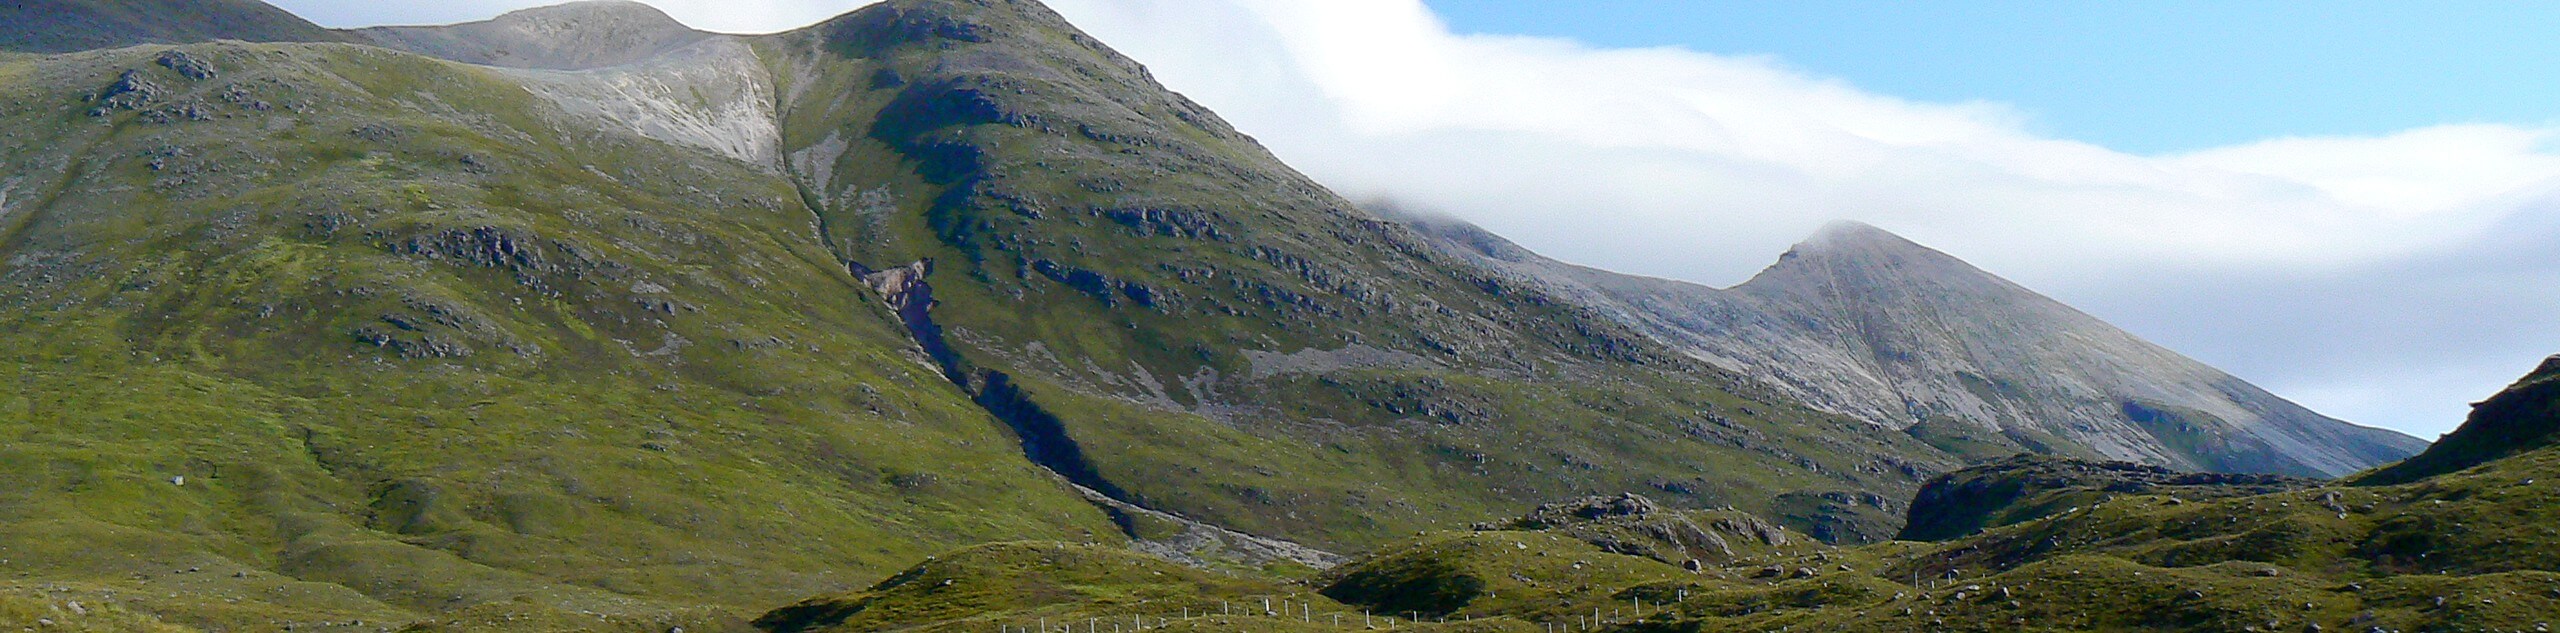 Beinn Eighe Mountain Trail